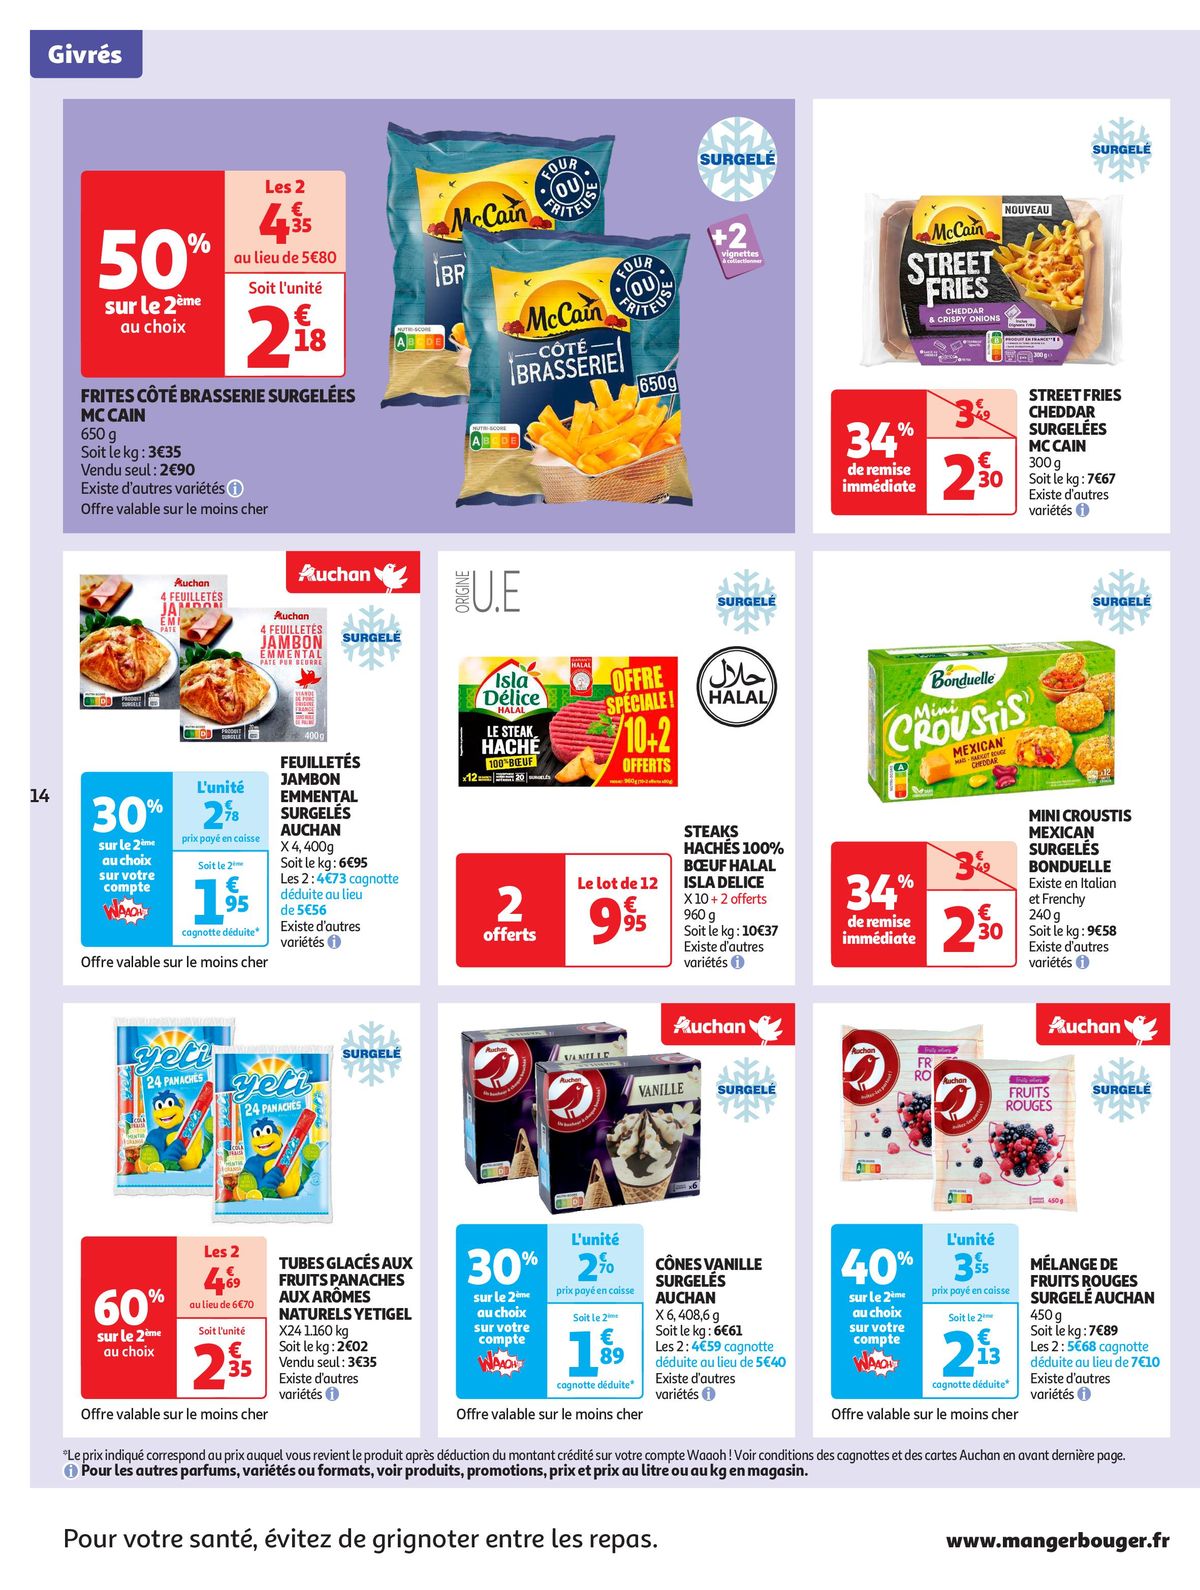 Catalogue Format XXL à prix XXS dans votre supermarché, page 00014